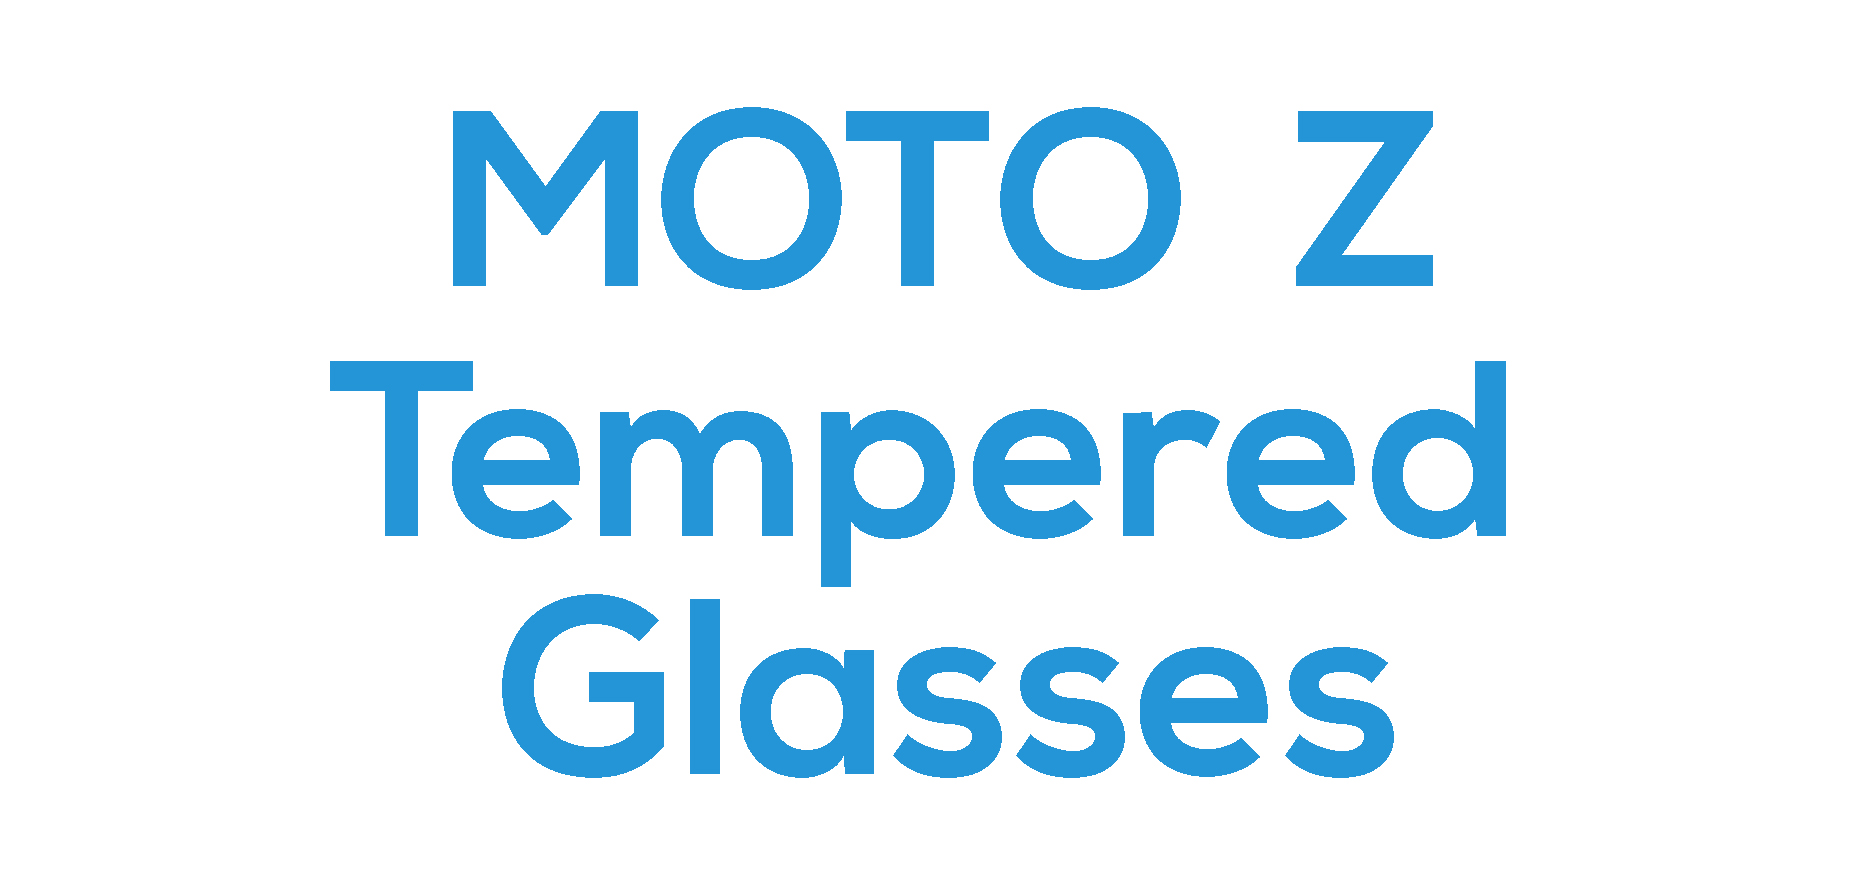 Moto Z Tempered Glasses